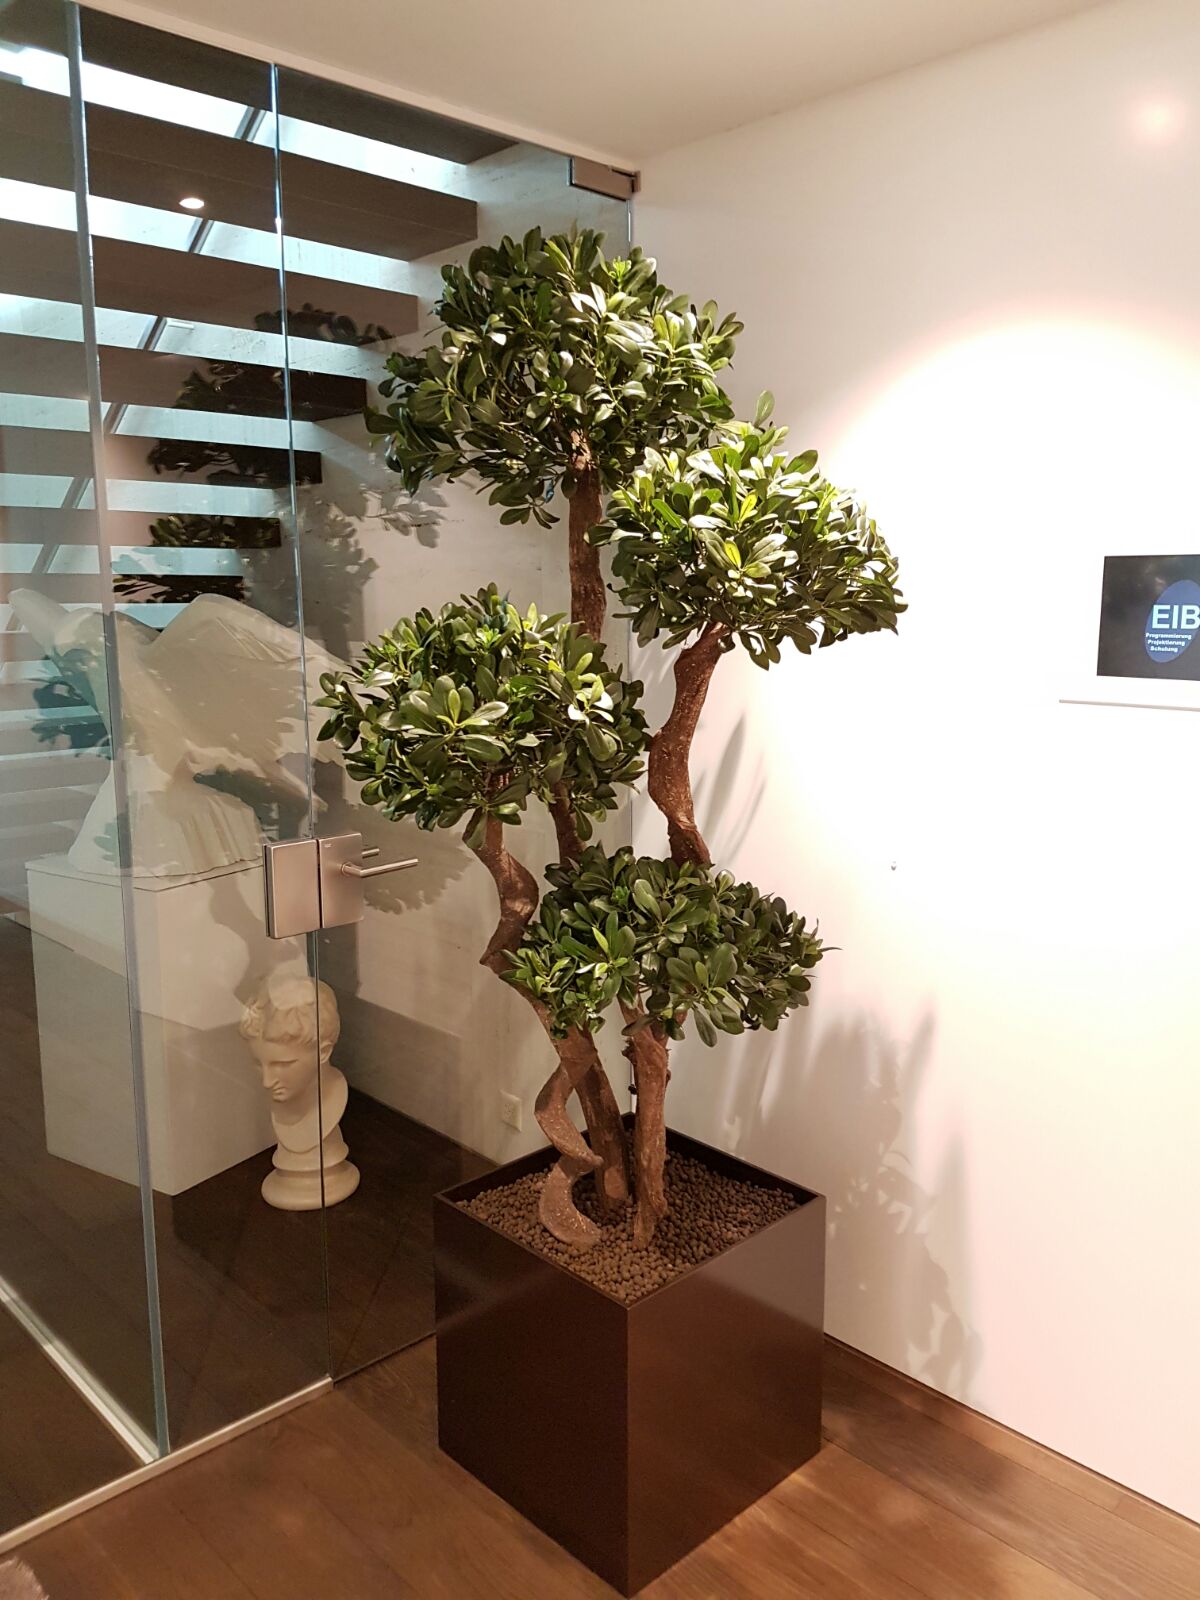 Begrünung im Innenbereich mit einem exklusiven Podocarpus Kunstbaum.